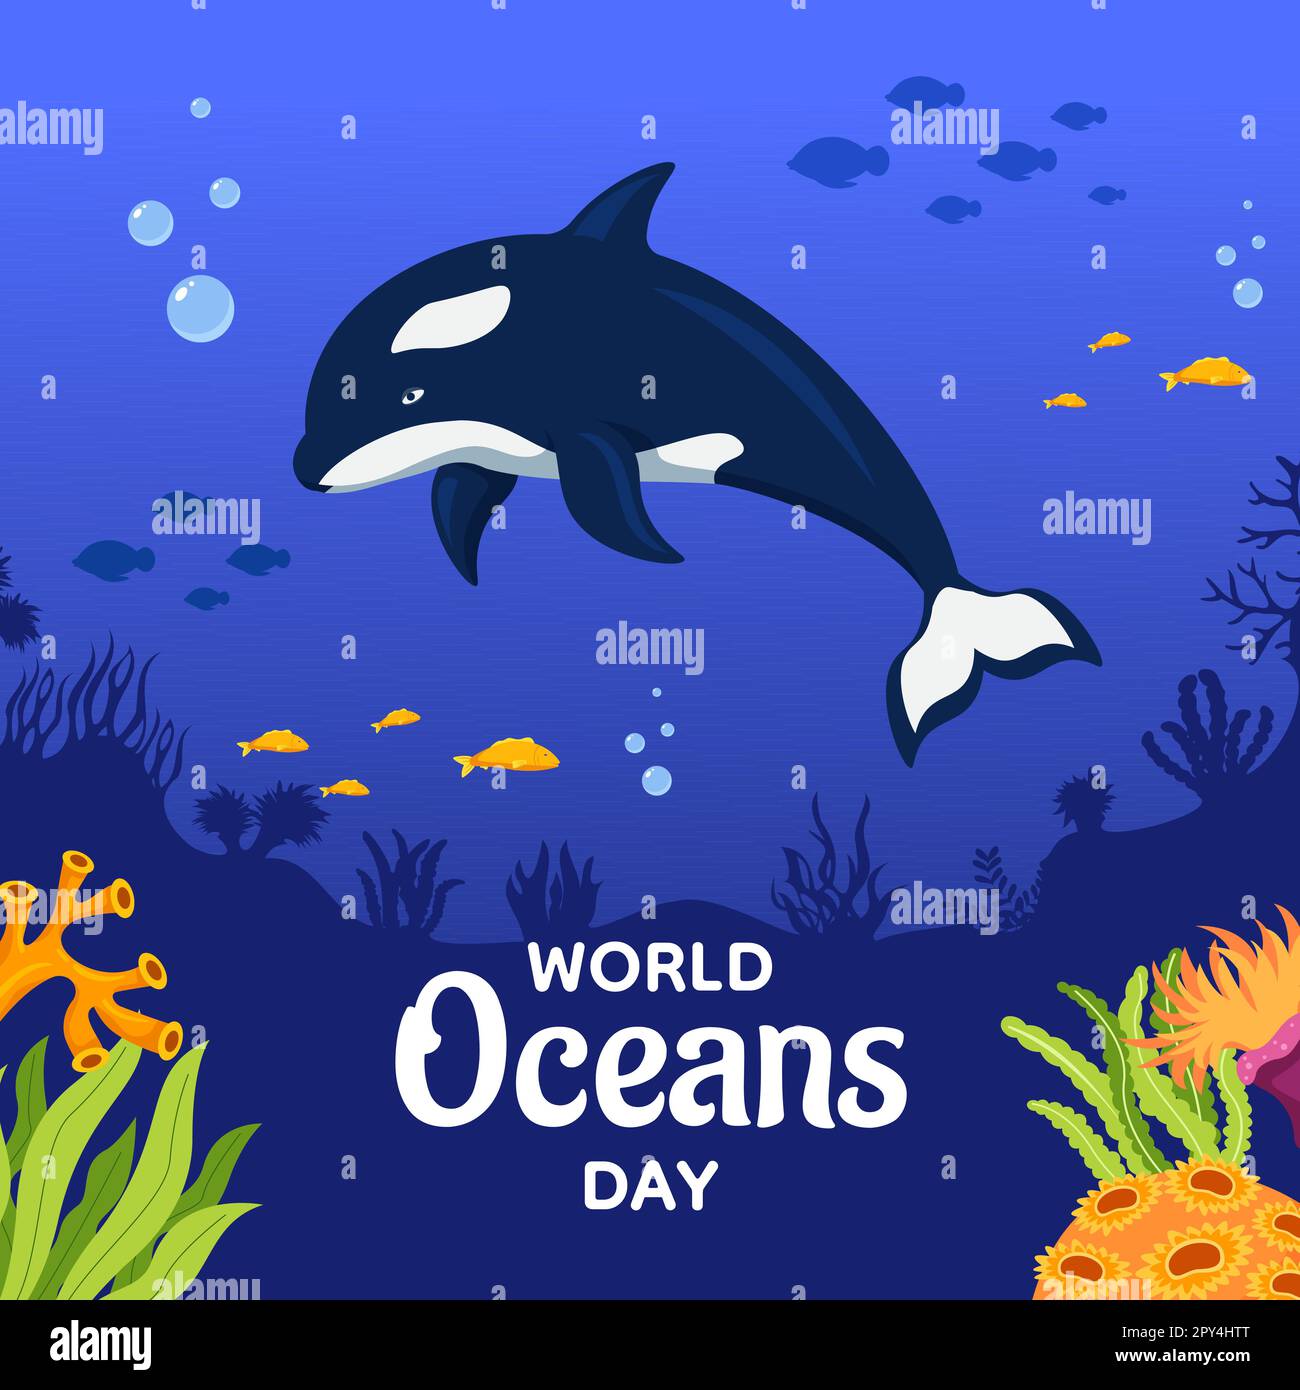 World Oceans Day Social Media Hintergrundillustration Handgezeichnete Cartoon-Vorlagen Stock Vektor